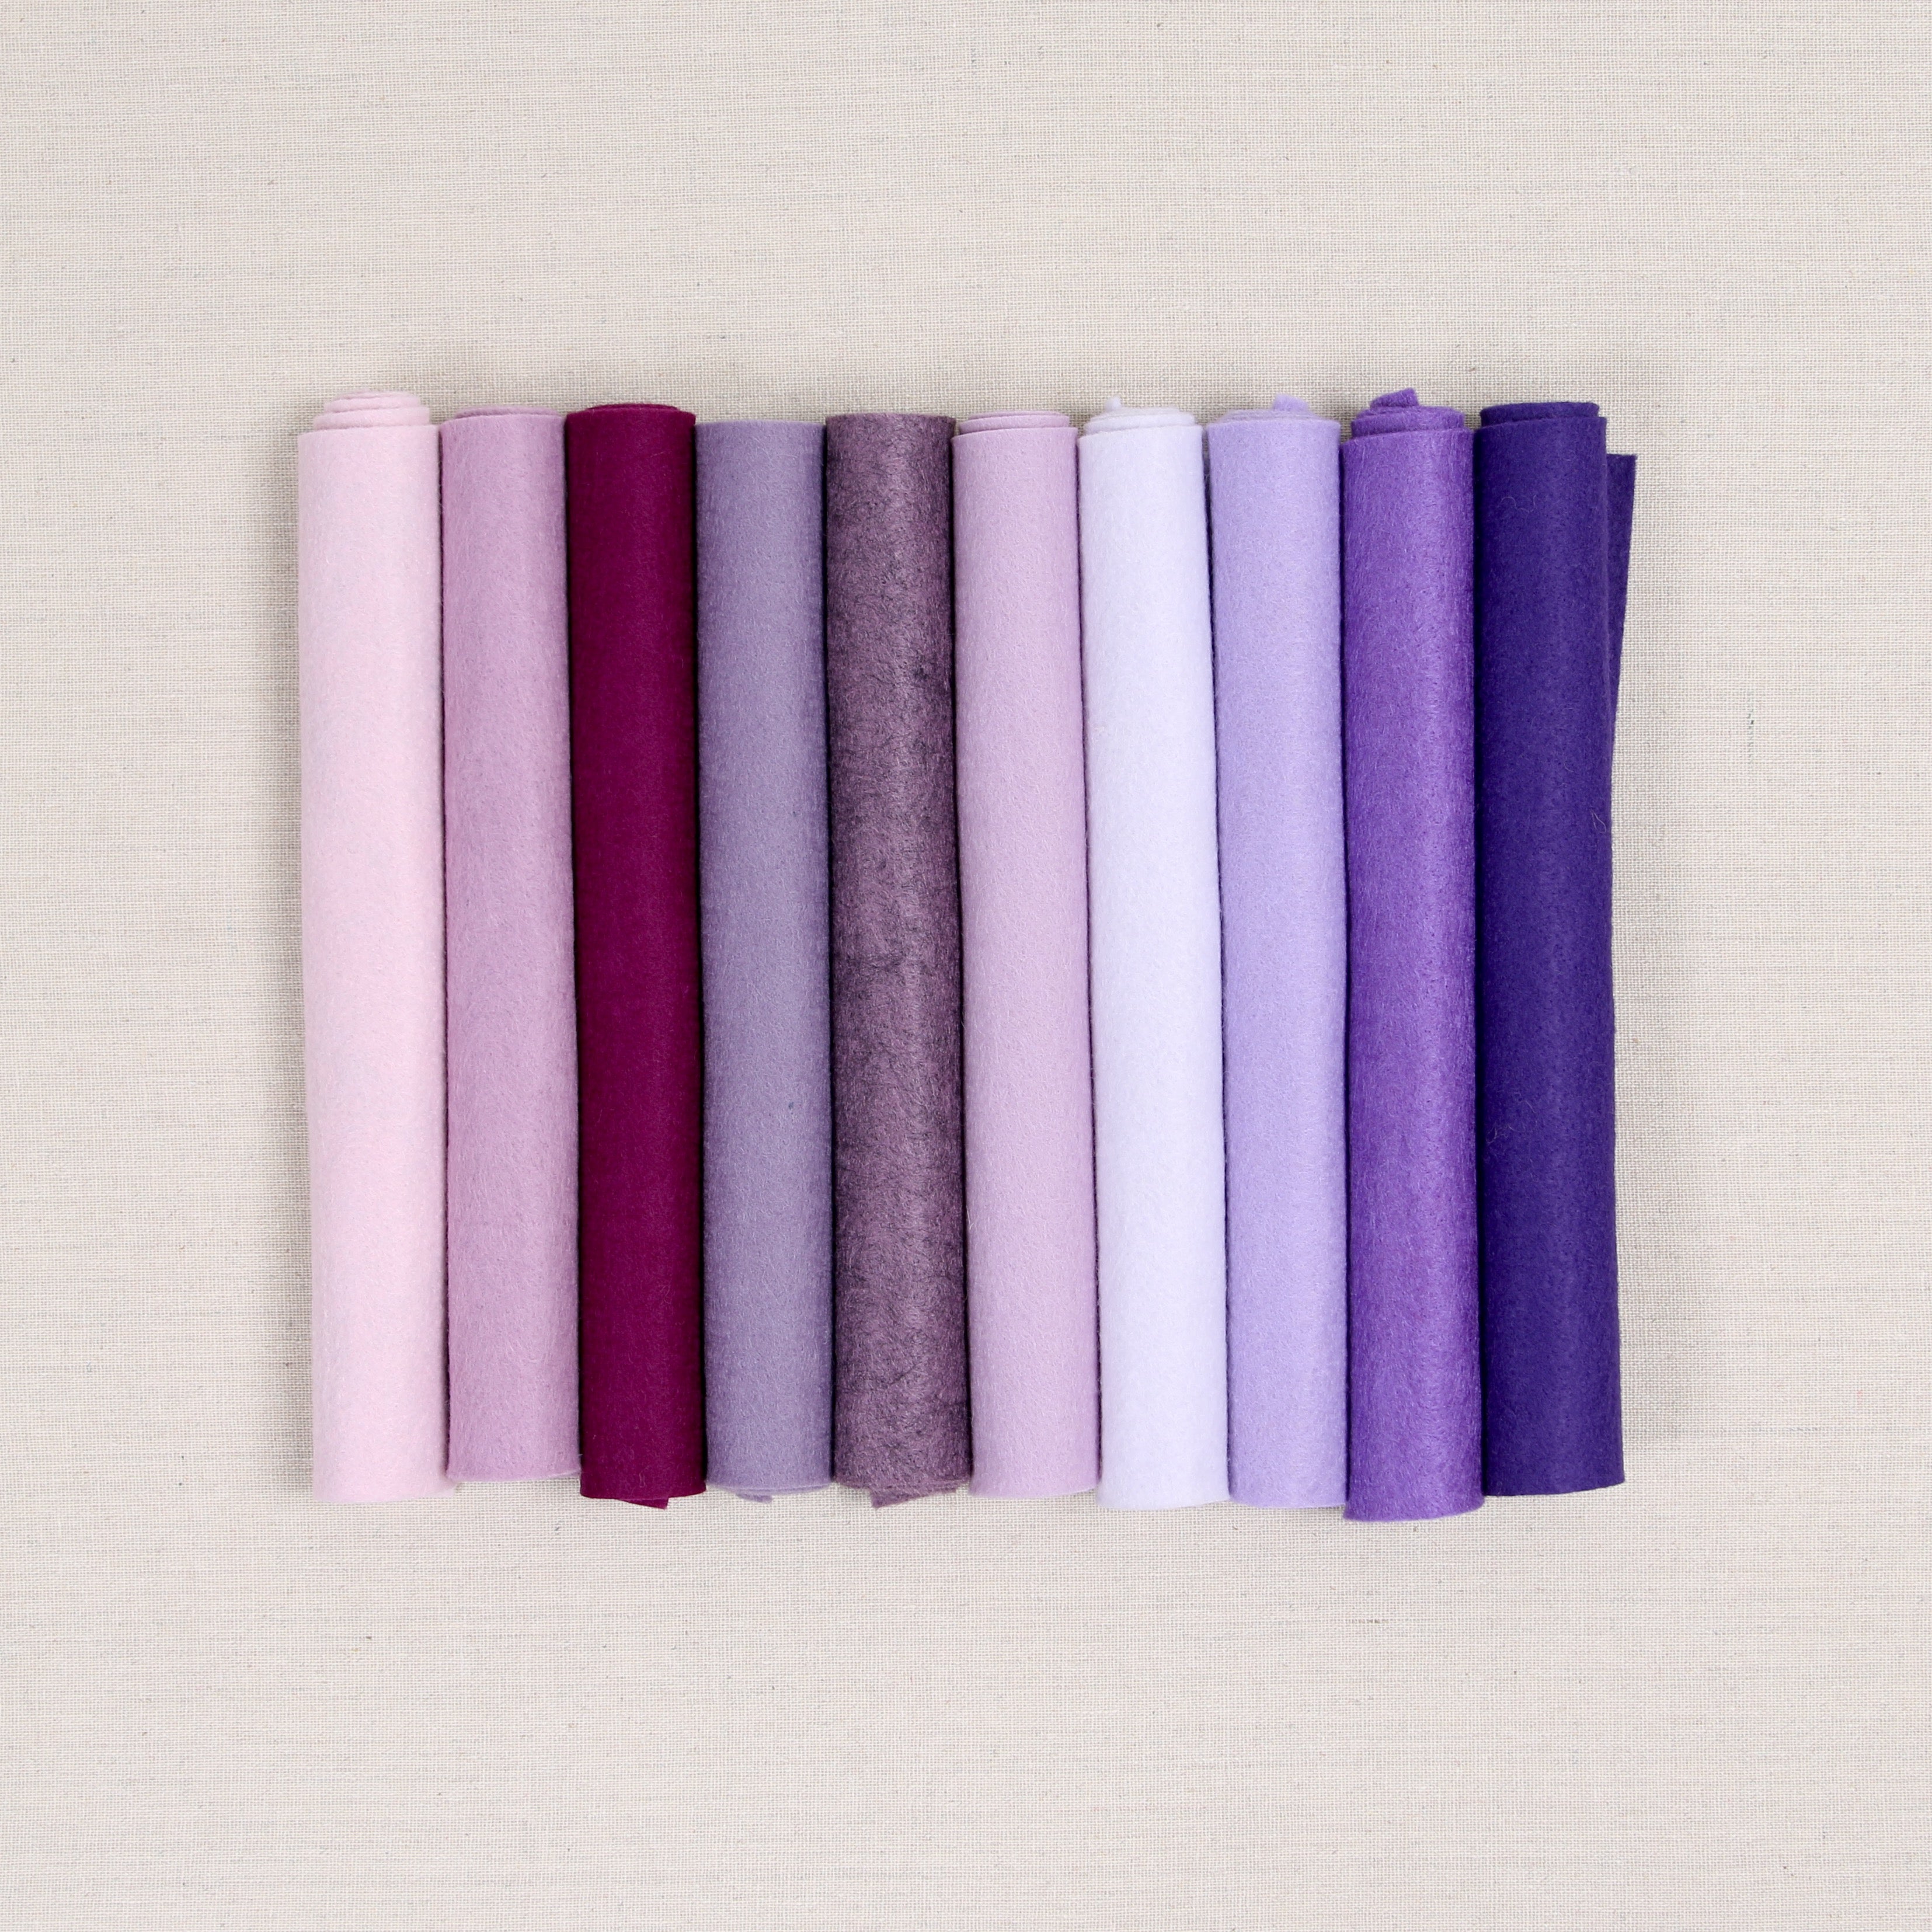 Wool Felt Sheet, purple wool felt, purple felt, wood violet felt